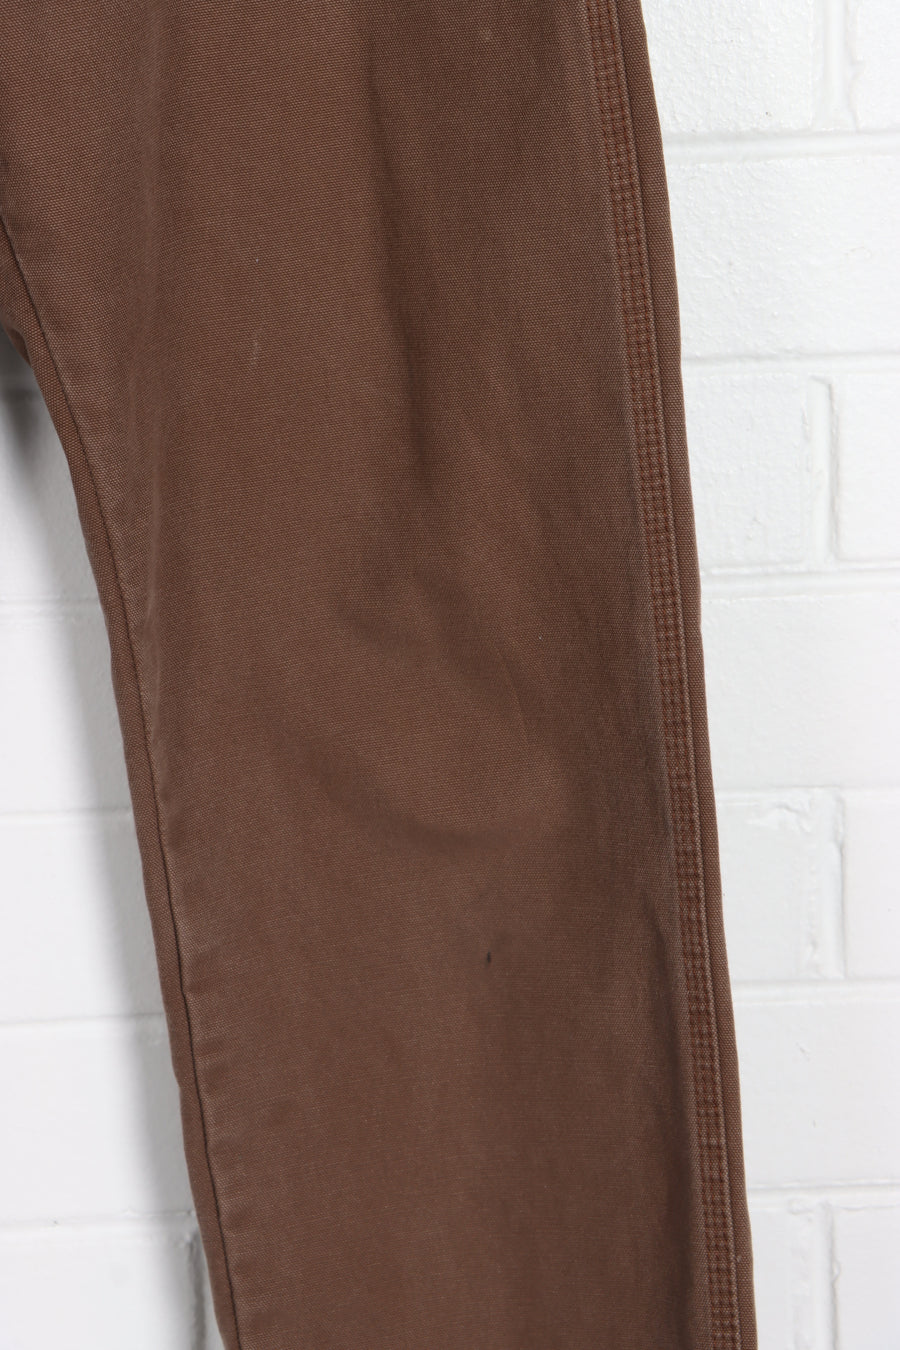 DICKIES Brown Workwear Pants (30 x 30) - Vintage Sole Melbourne